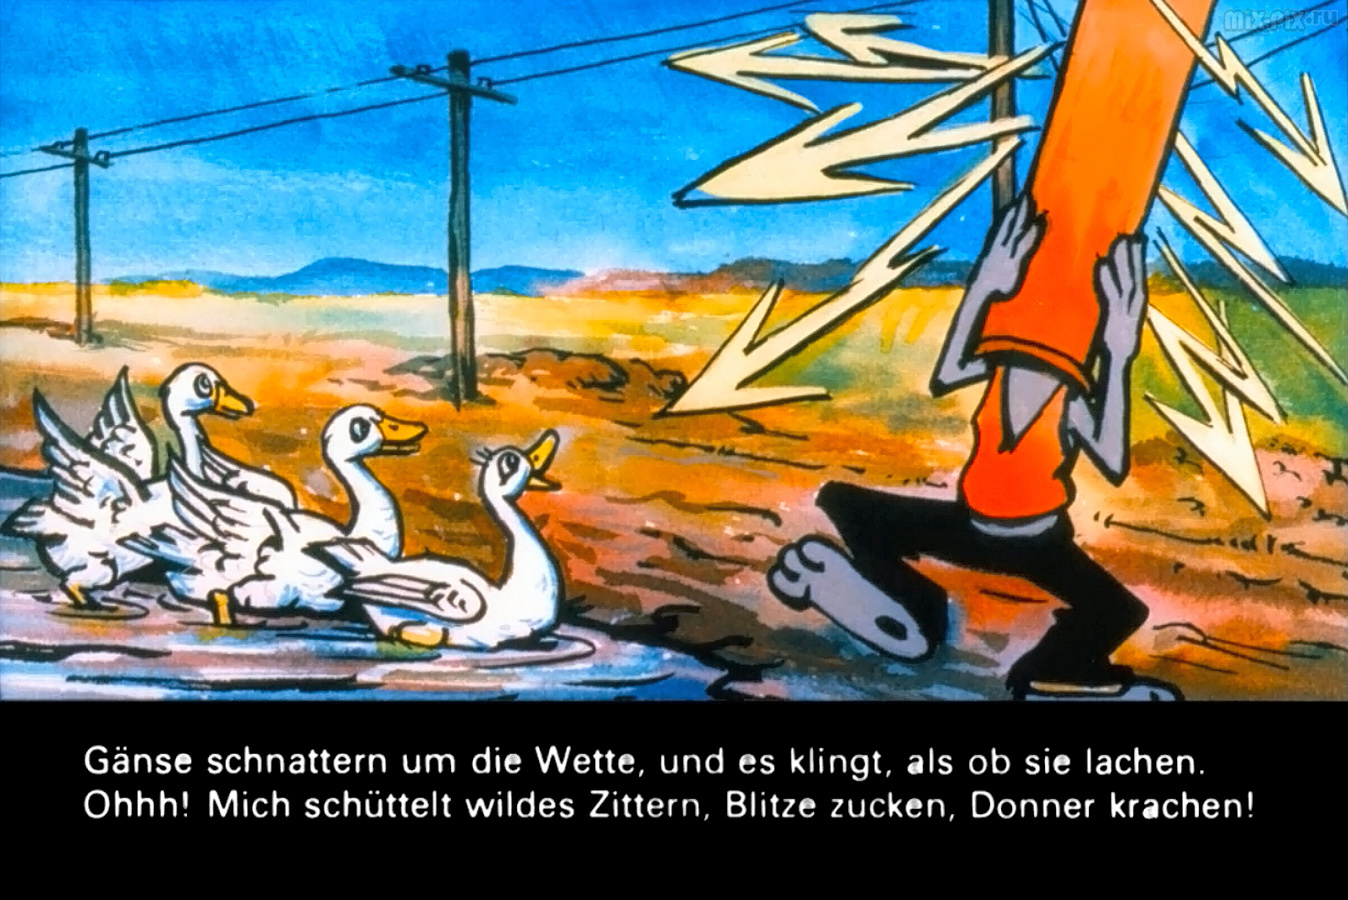 017_Hase-und-Wolf---Hohenflug---Teufelsspuk.jpg